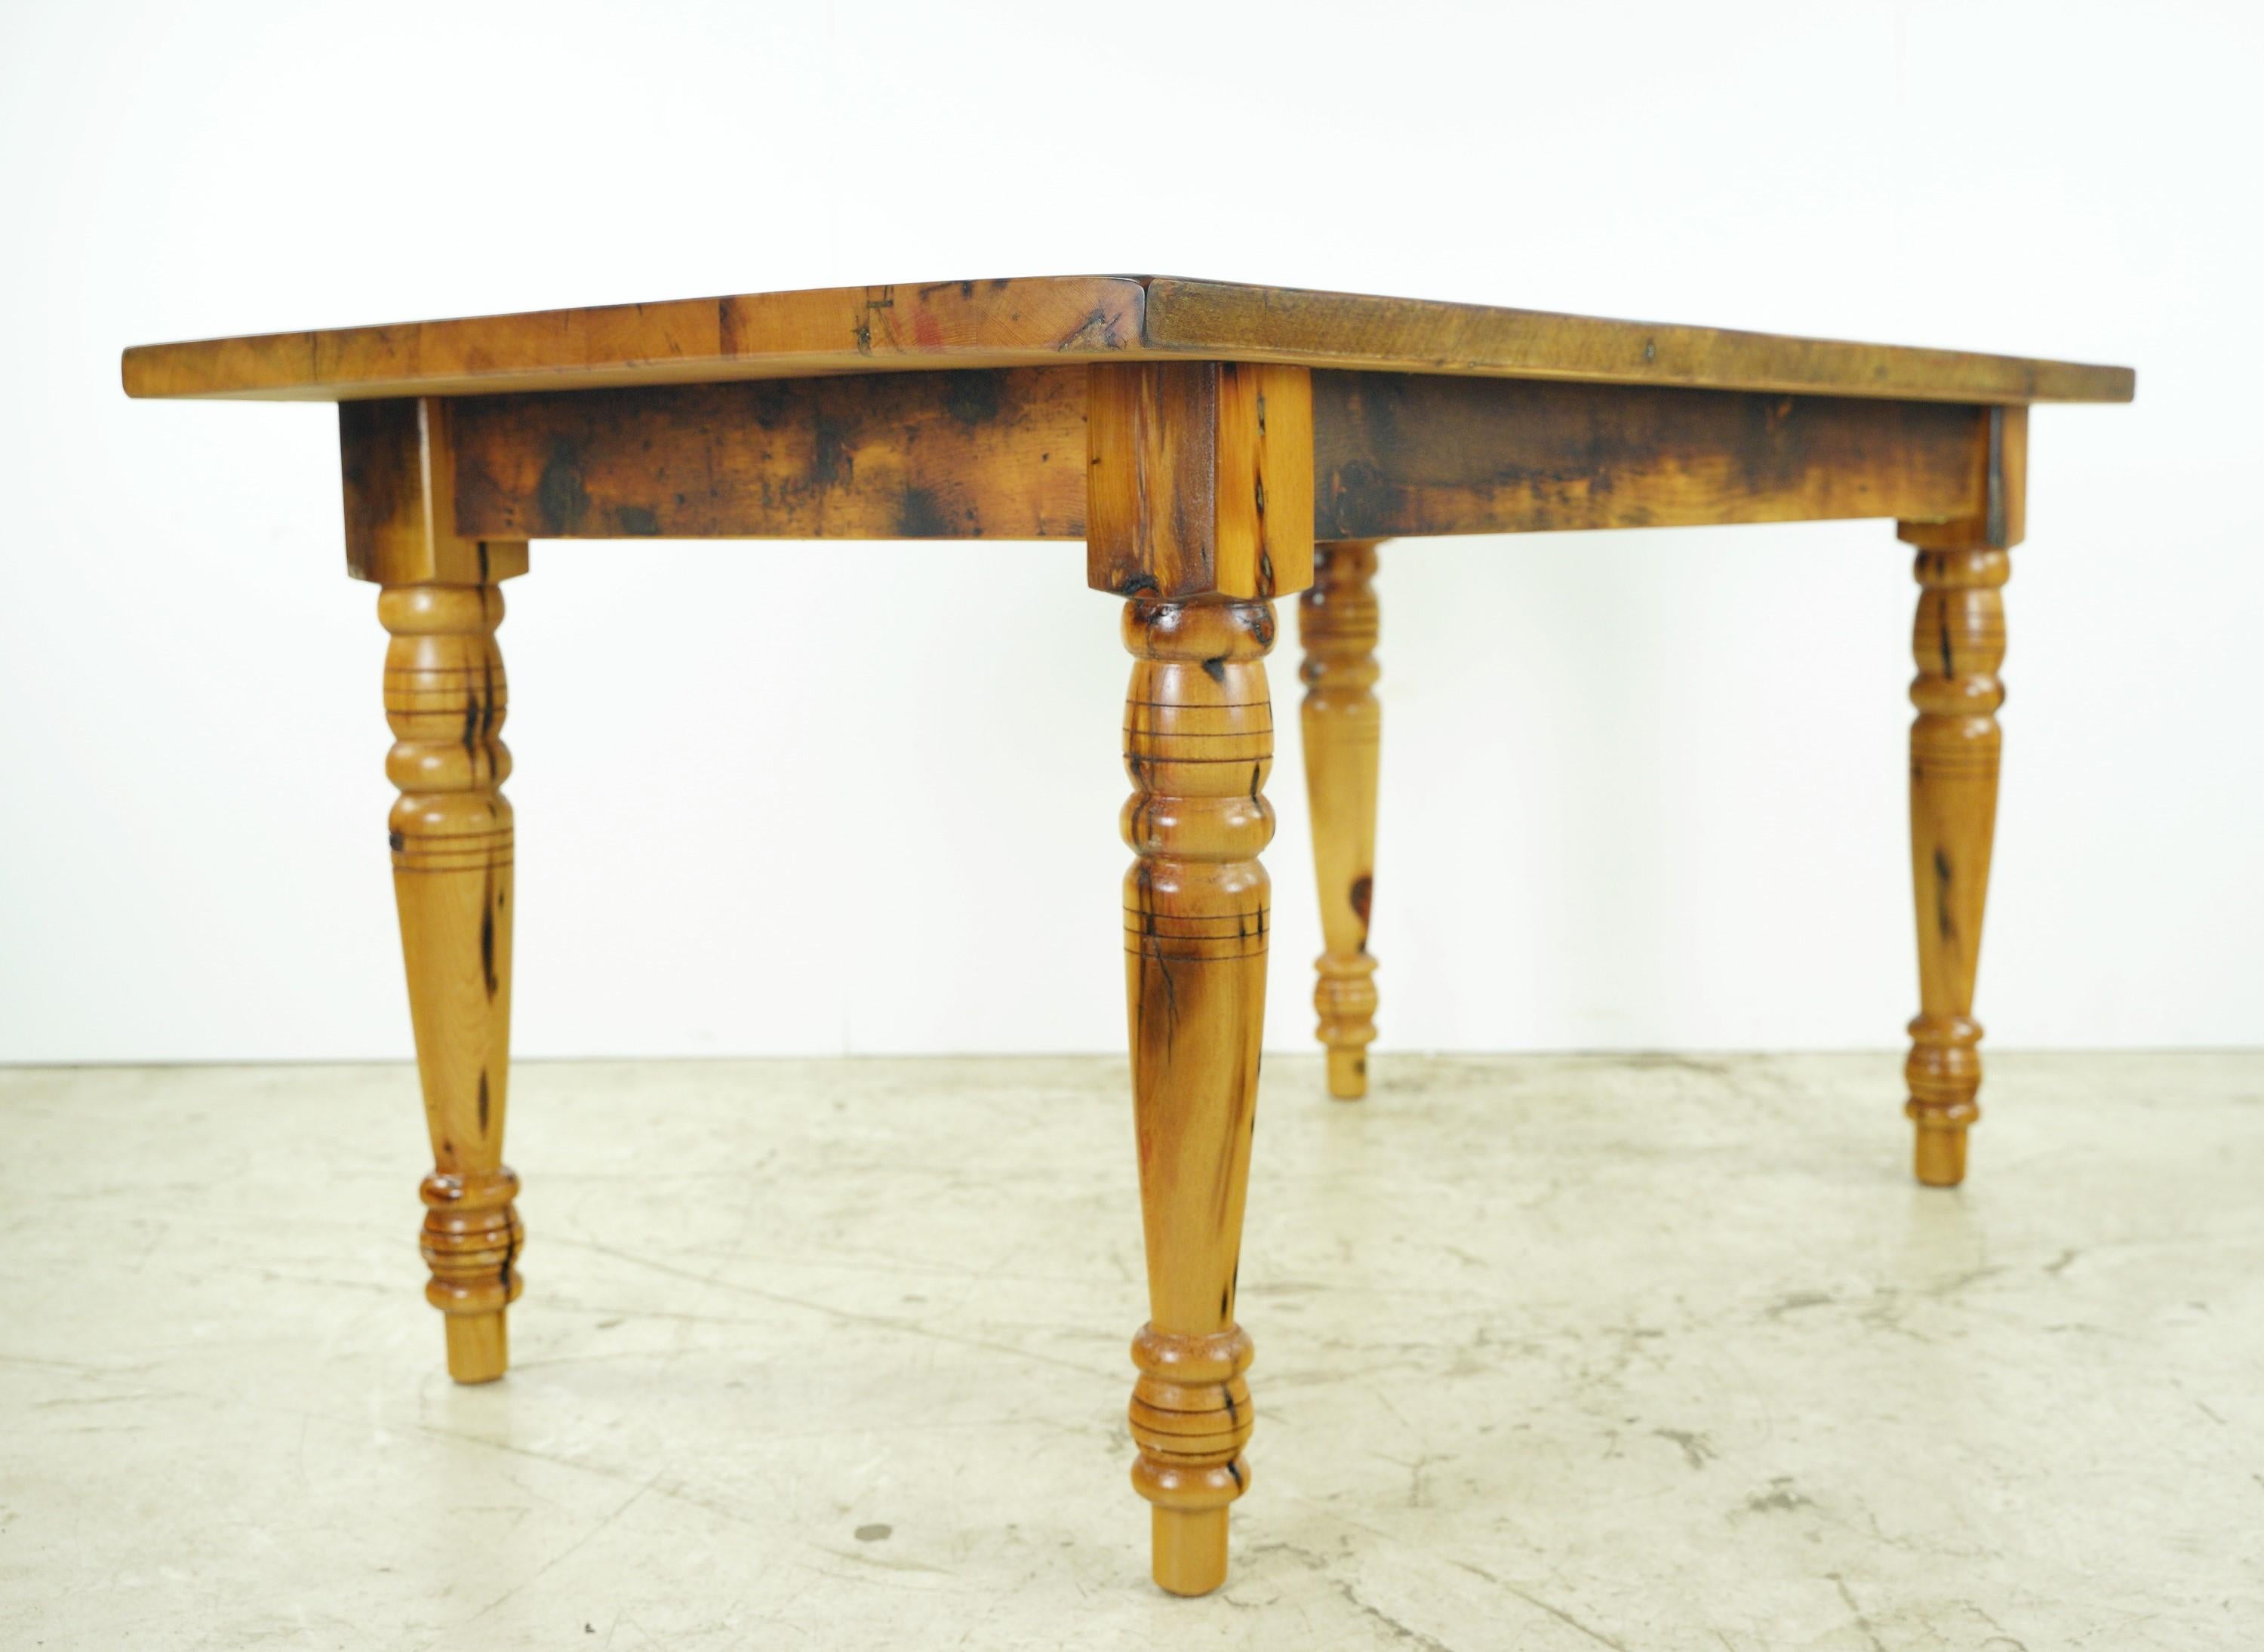 Dieser handgefertigte Bauernhoftisch mit gedrehten Beinen von Olde Good Things zeichnet sich durch außergewöhnliche Handwerkskunst aus. Das aus aufgearbeitetem Kiefernholz gefertigte und natürlich gebeizte Möbelstück versprüht rustikalen Charme und